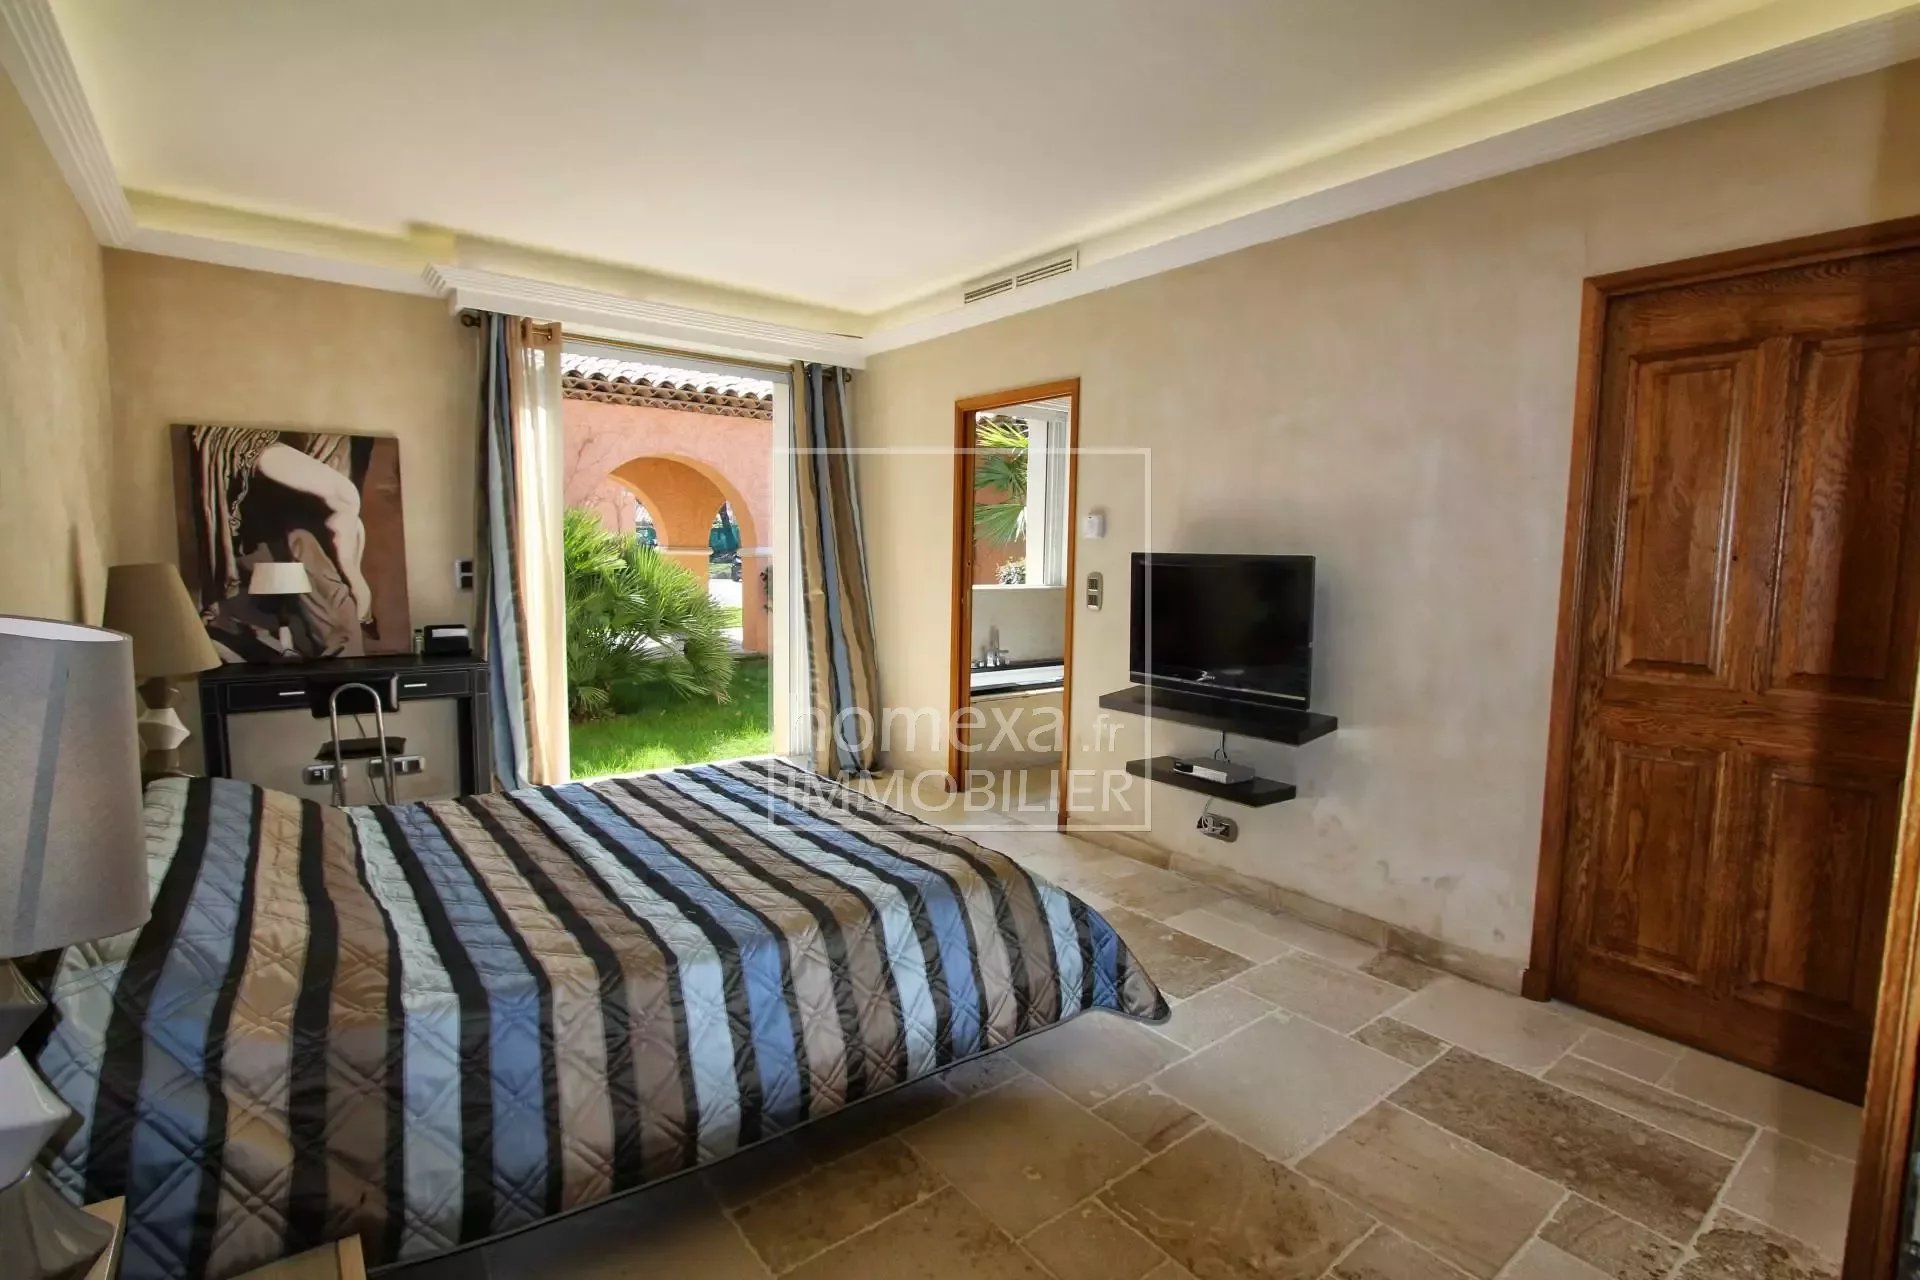 lux rental mougins : bedroom view